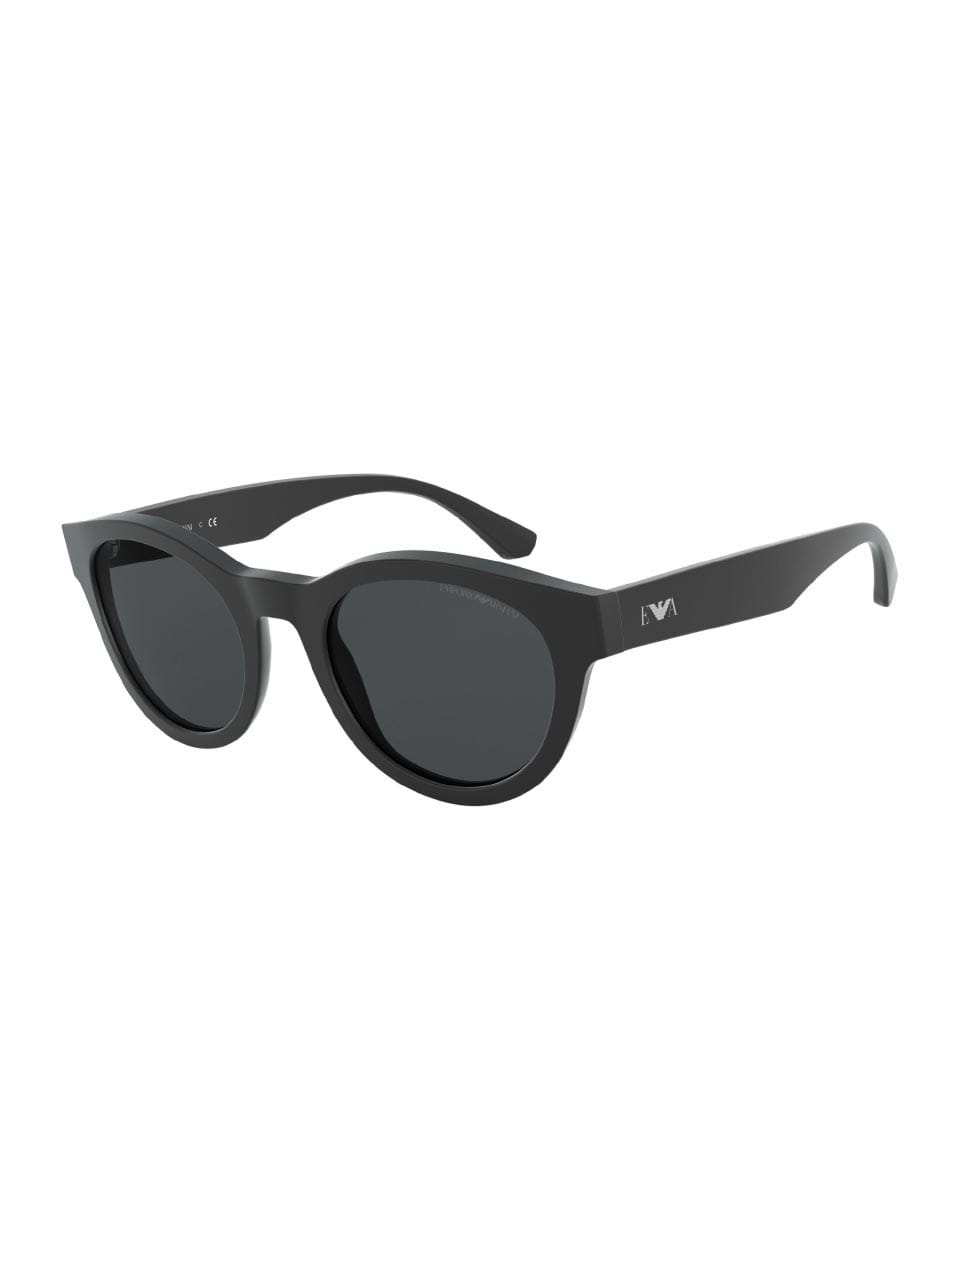 emporio armani men's sunglasses black